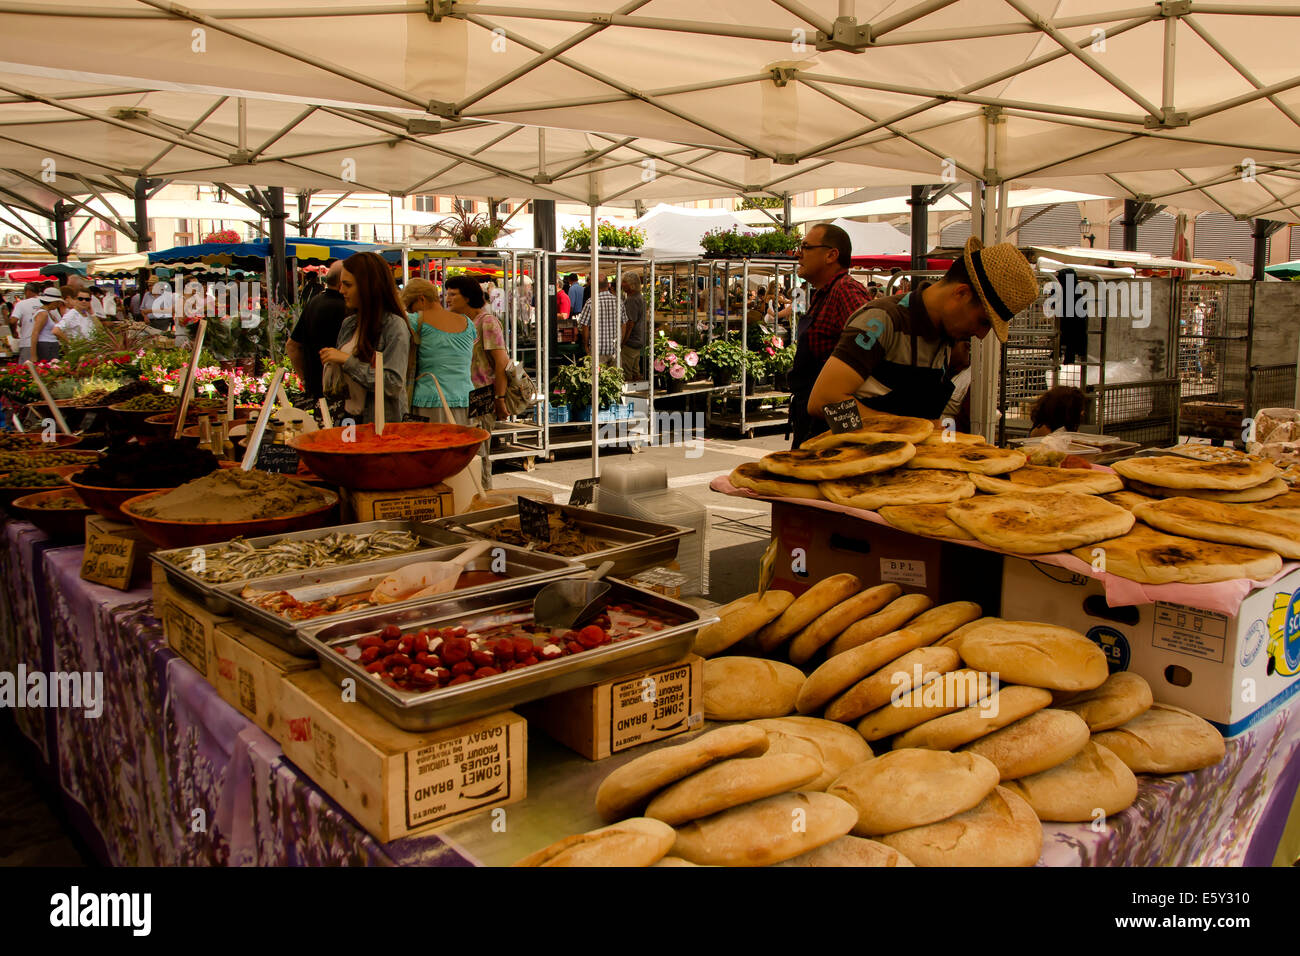 Arabische Brot und mehrere Köstlichkeiten im Stall in Moissac Sonntagsmarkt, Süd-west Frankreich, illustriert von nordafrikanischen Einfluss. Stockfoto